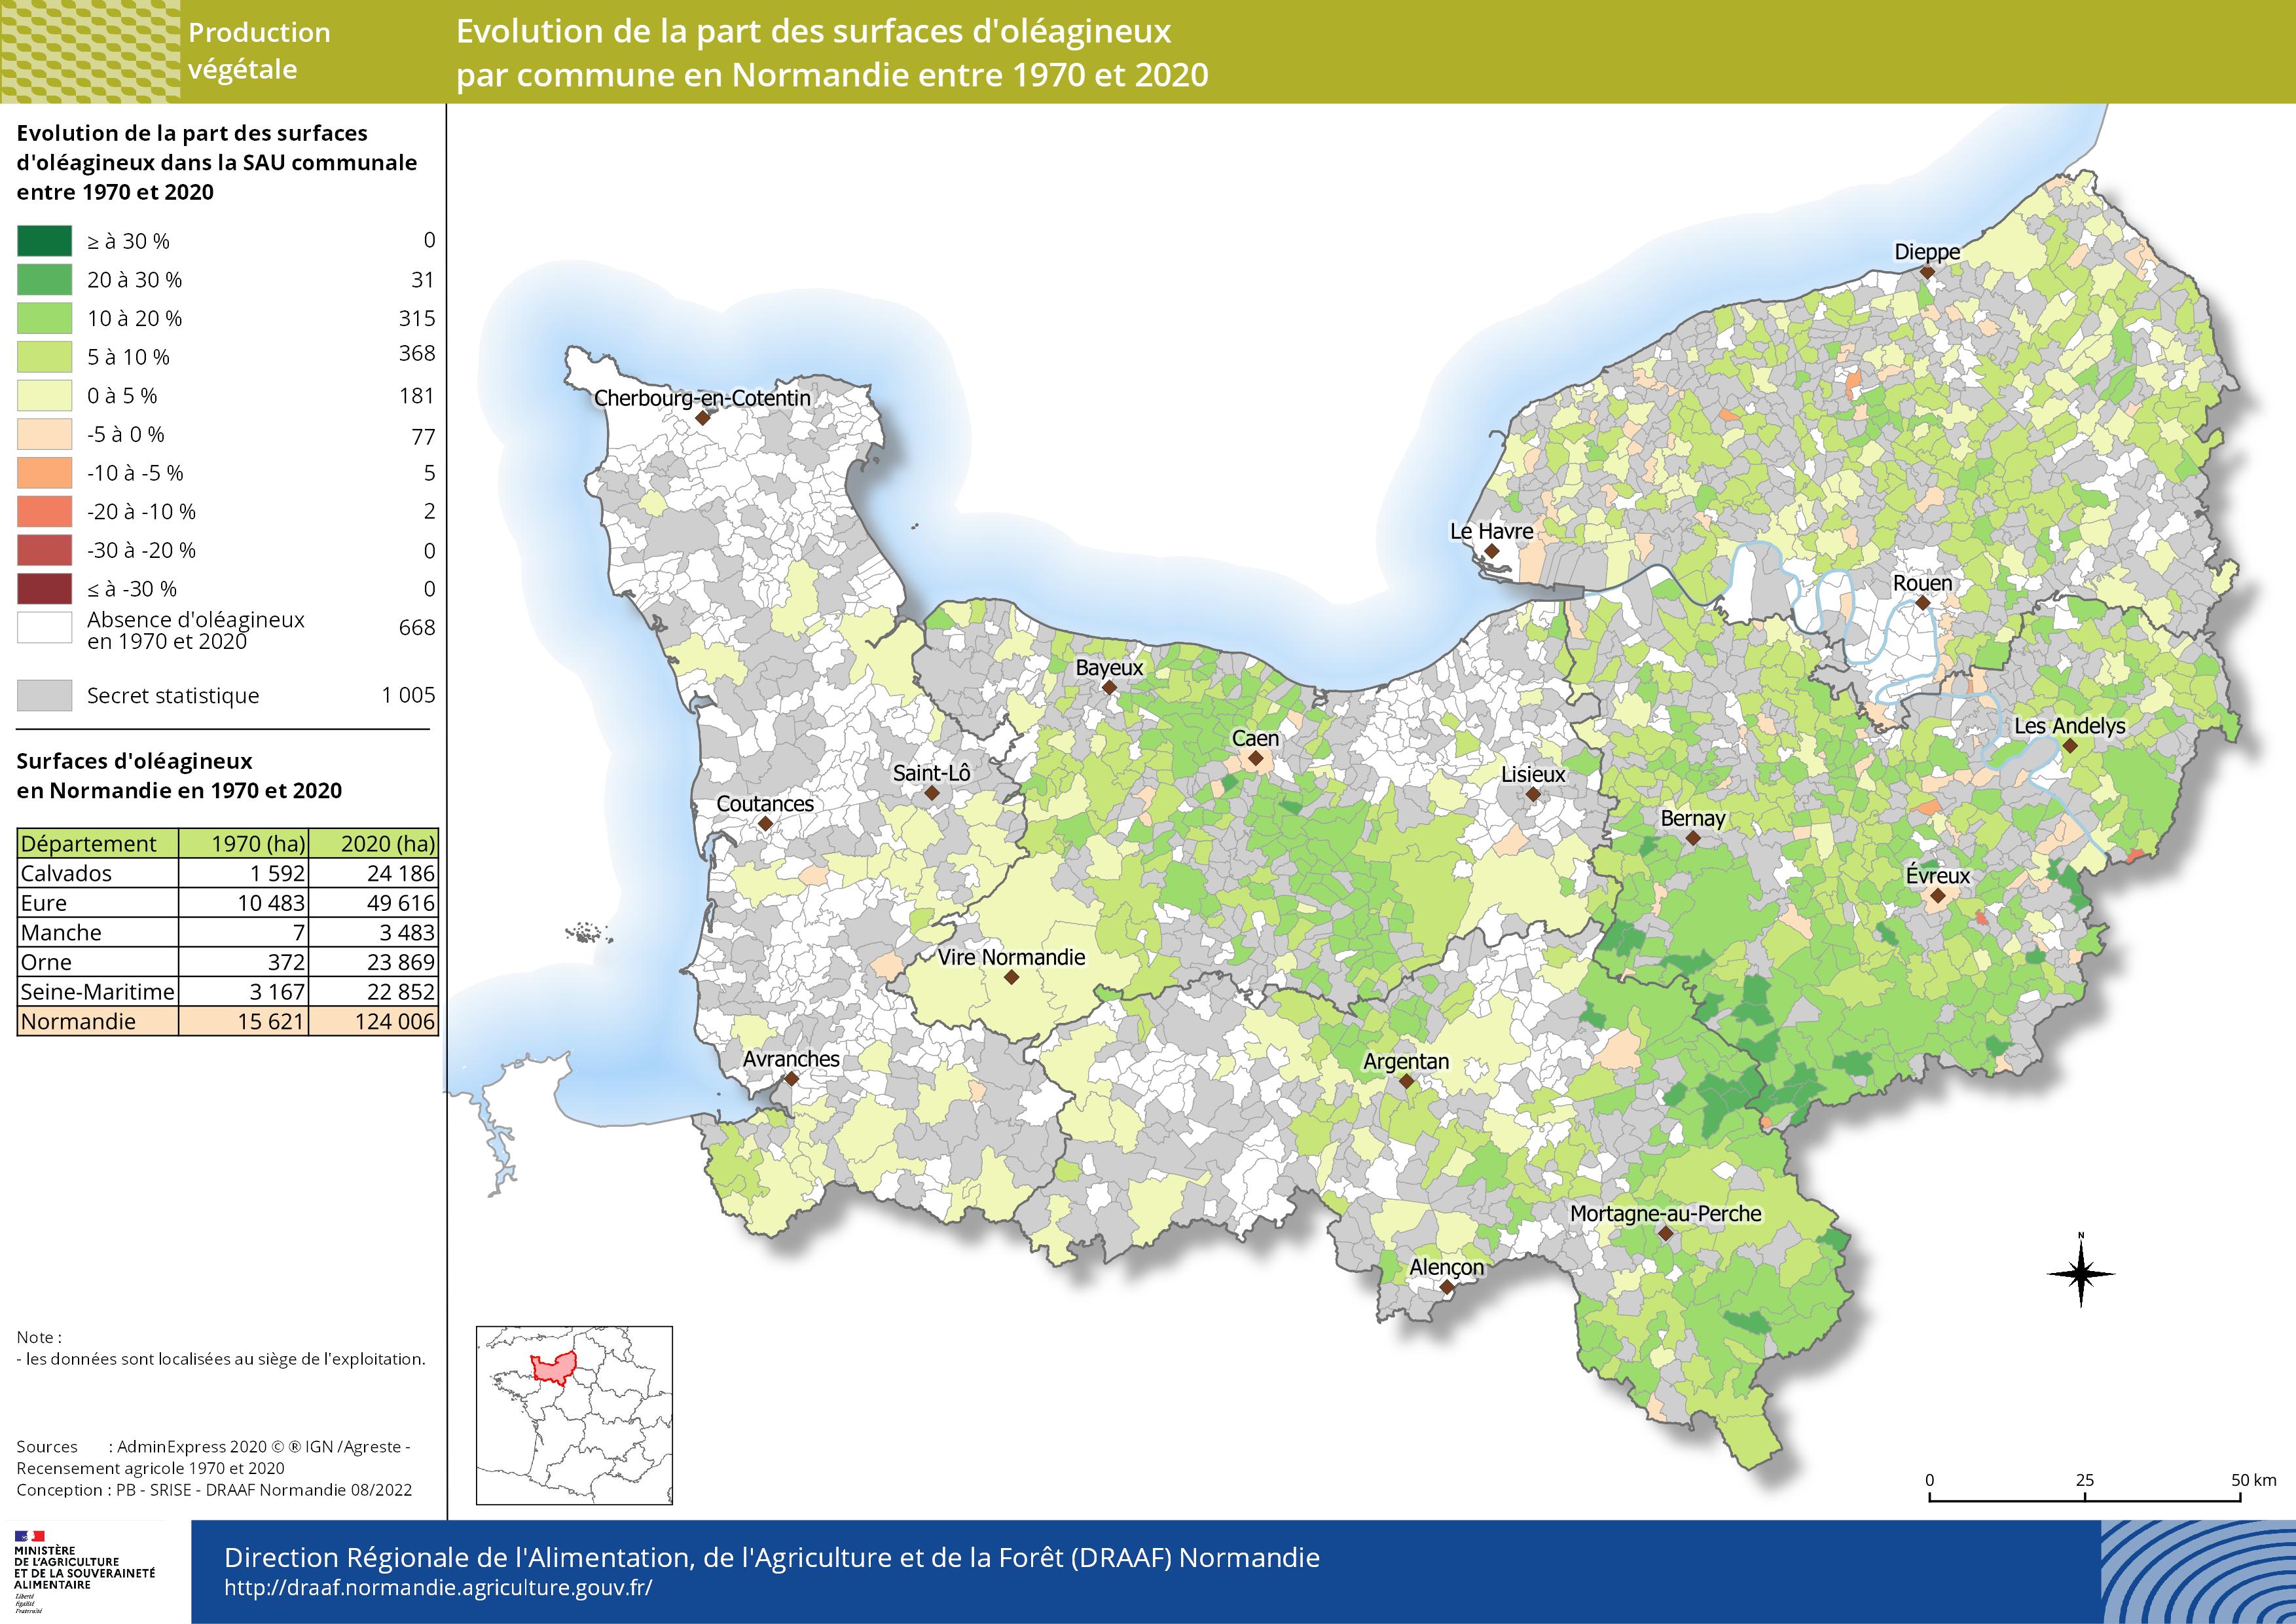 carte représentant l'évolution de la part des surfaces d'oléagineux par commune en Normandie entre 1970 et 2020